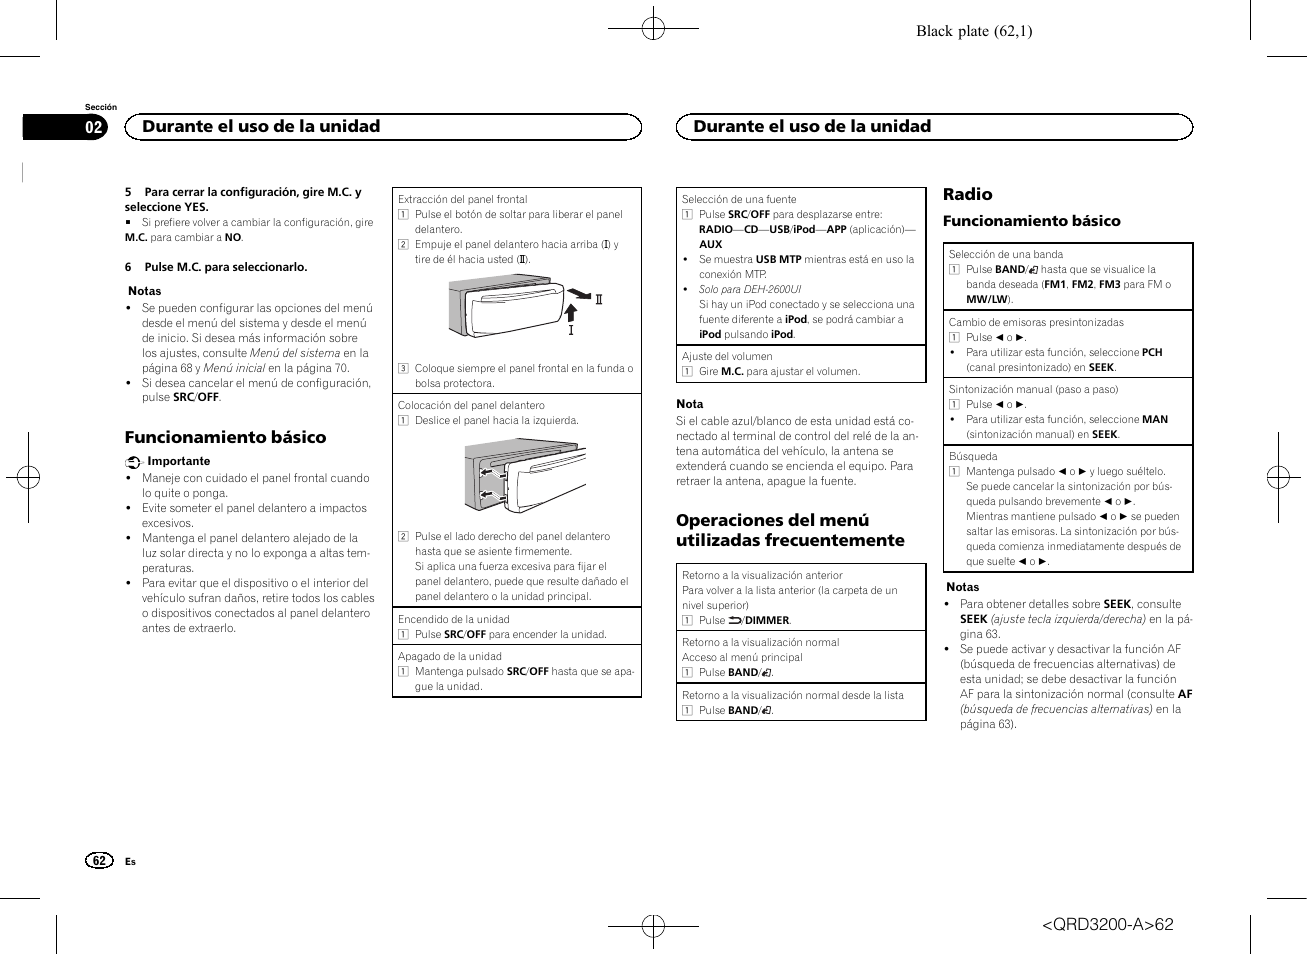 Funcionamiento básico, Operaciones del menú utilizadas frecuentemente, Radio  | Pioneer DEH-2600UI User Manual | Page 62 / 148 | Original mode